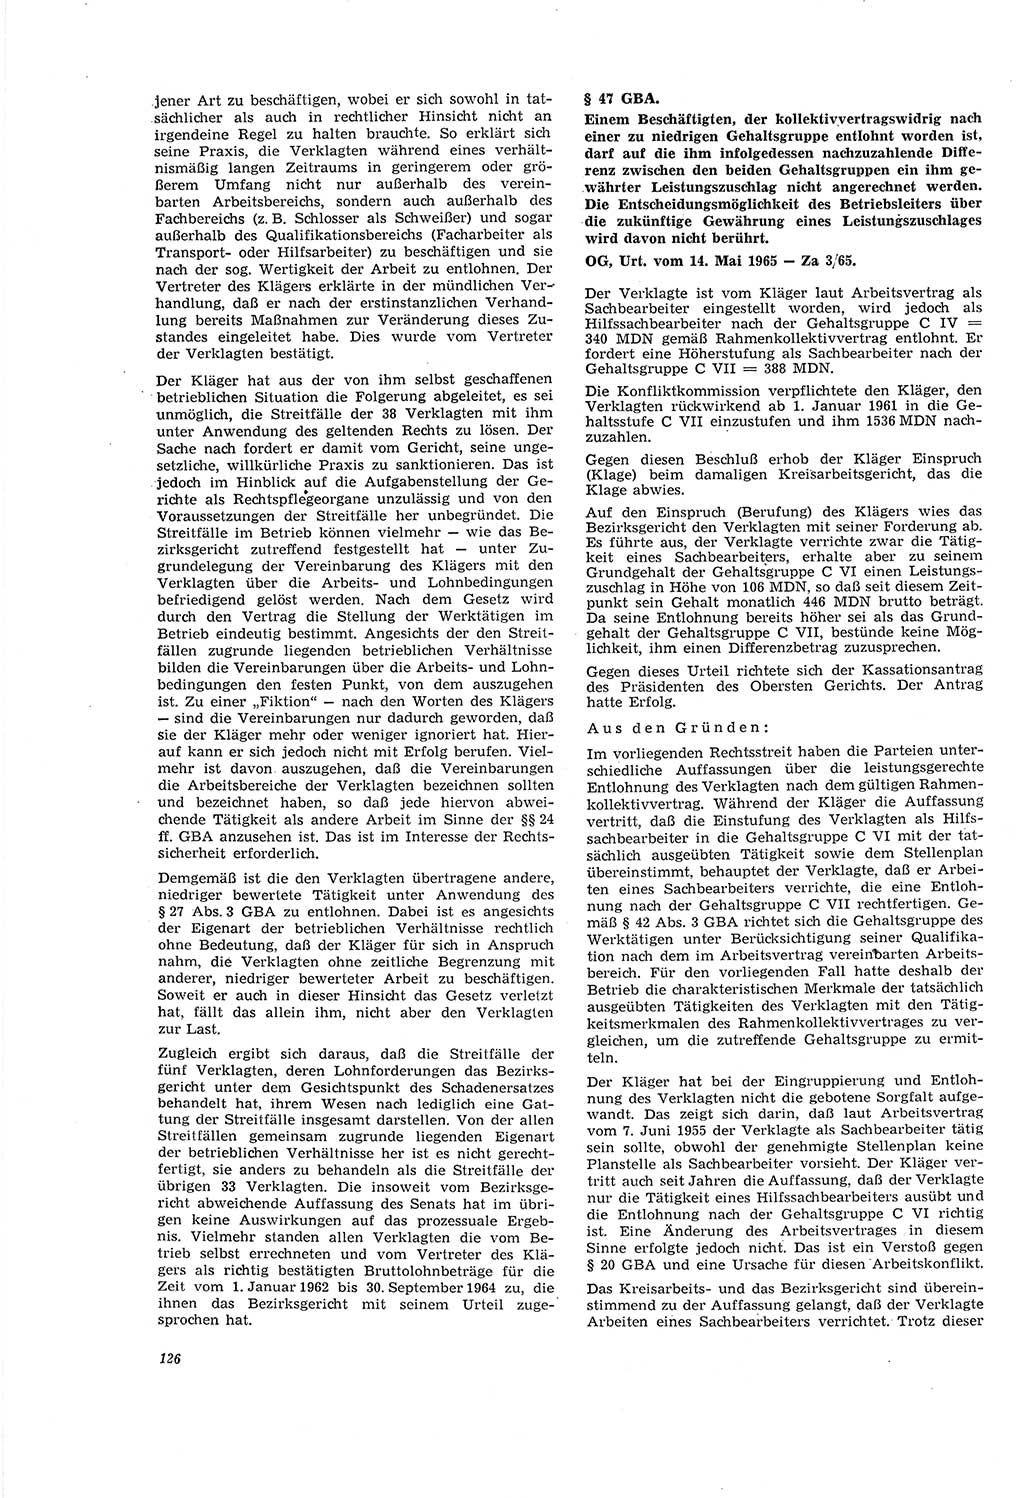 Neue Justiz (NJ), Zeitschrift für Recht und Rechtswissenschaft [Deutsche Demokratische Republik (DDR)], 20. Jahrgang 1966, Seite 126 (NJ DDR 1966, S. 126)